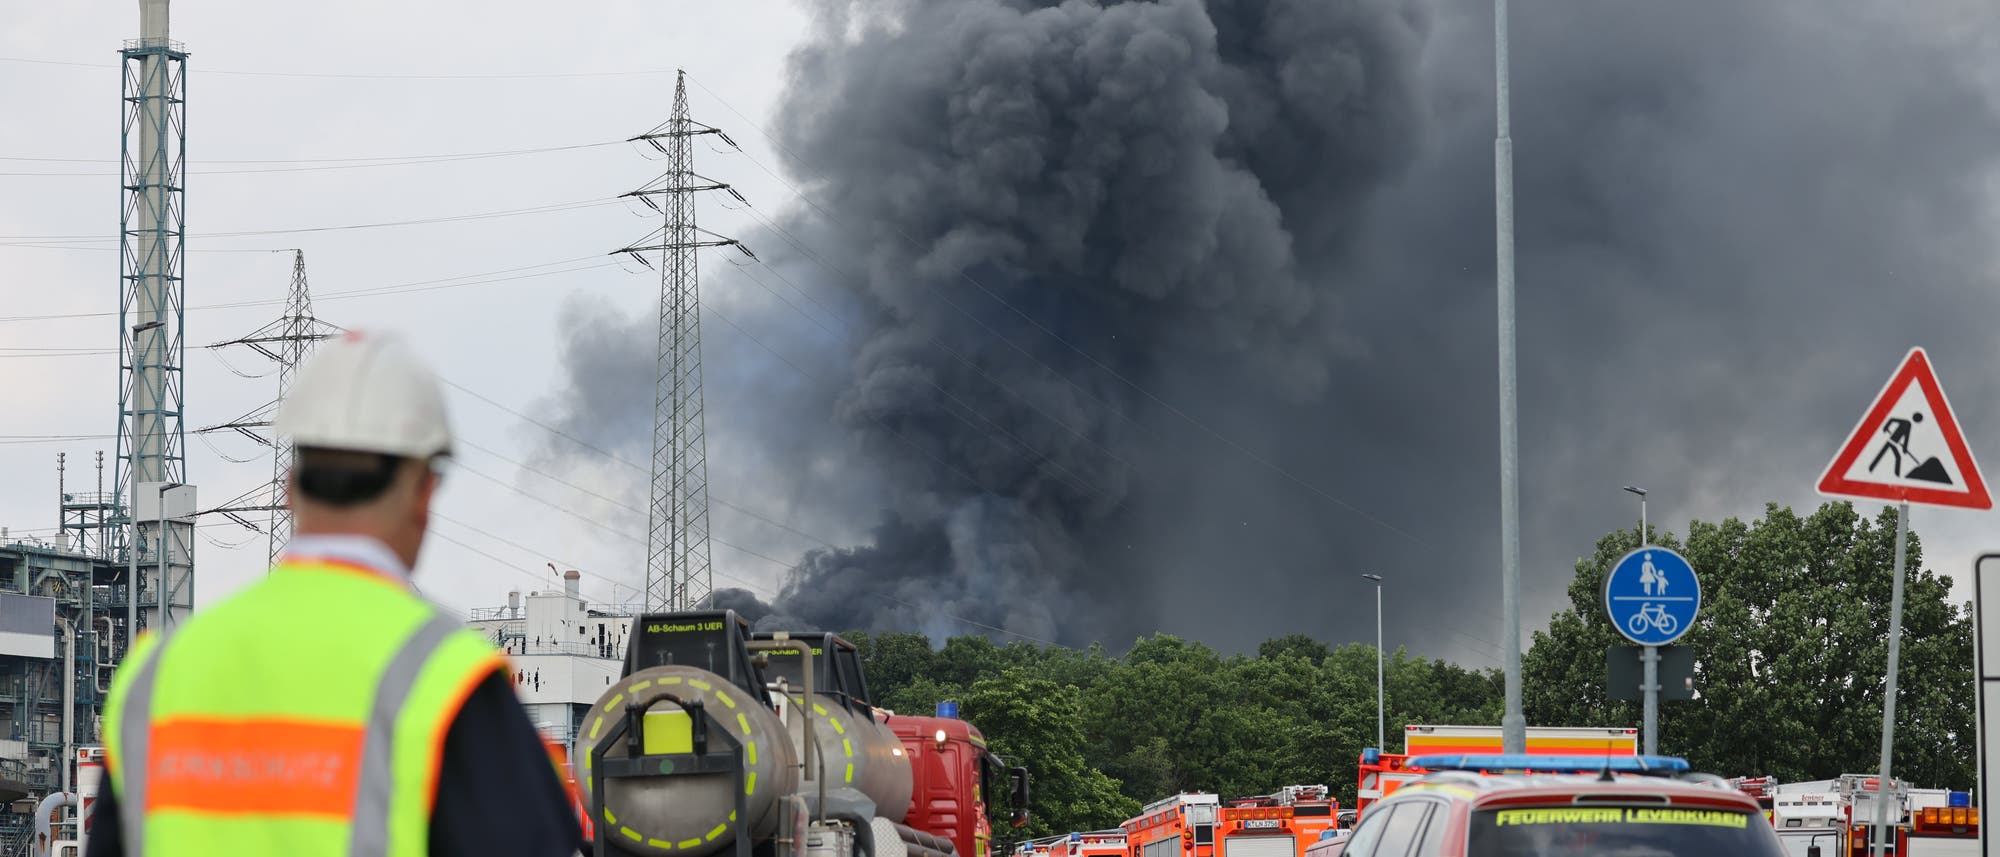 Einsatzfahrzeuge der Feuerwehr stehen am 27. Juli 2021 unweit einer Zufahrt zum Chempark, über dem eine dunkle Rauchwolke aufsteigt. 